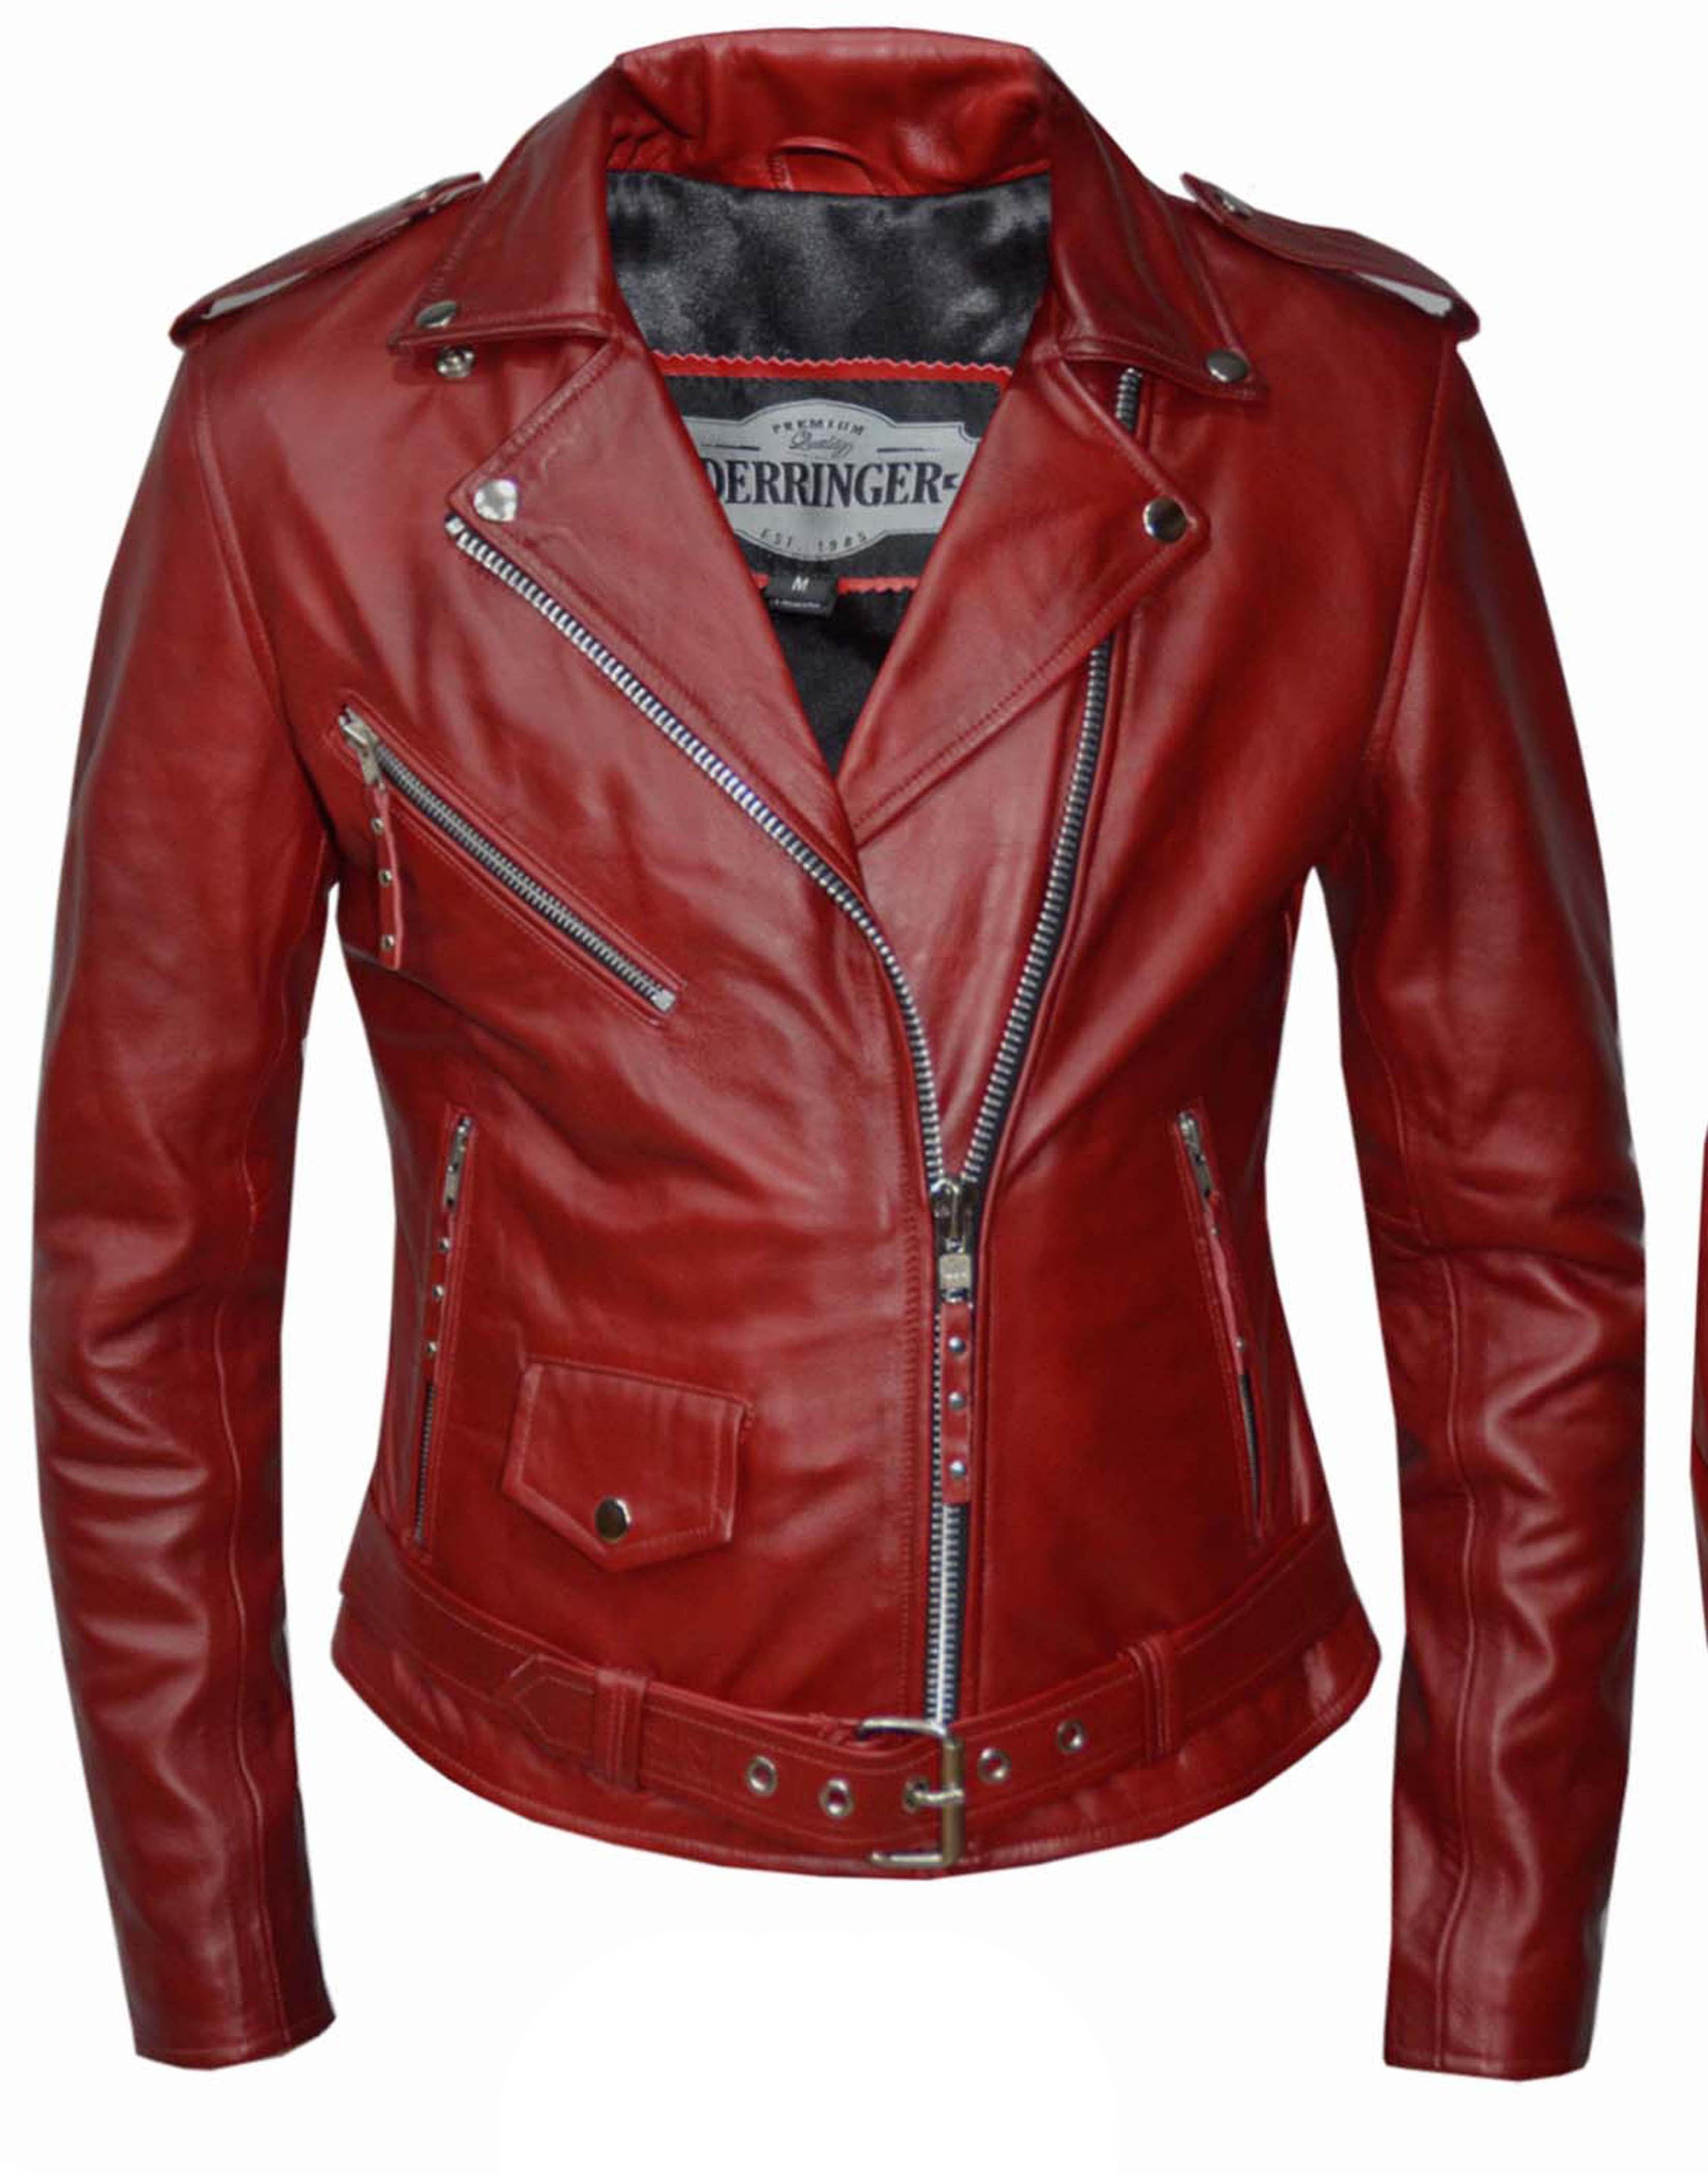 Seattle Seahawks Leather Jacket on Sale, SAVE 45% 